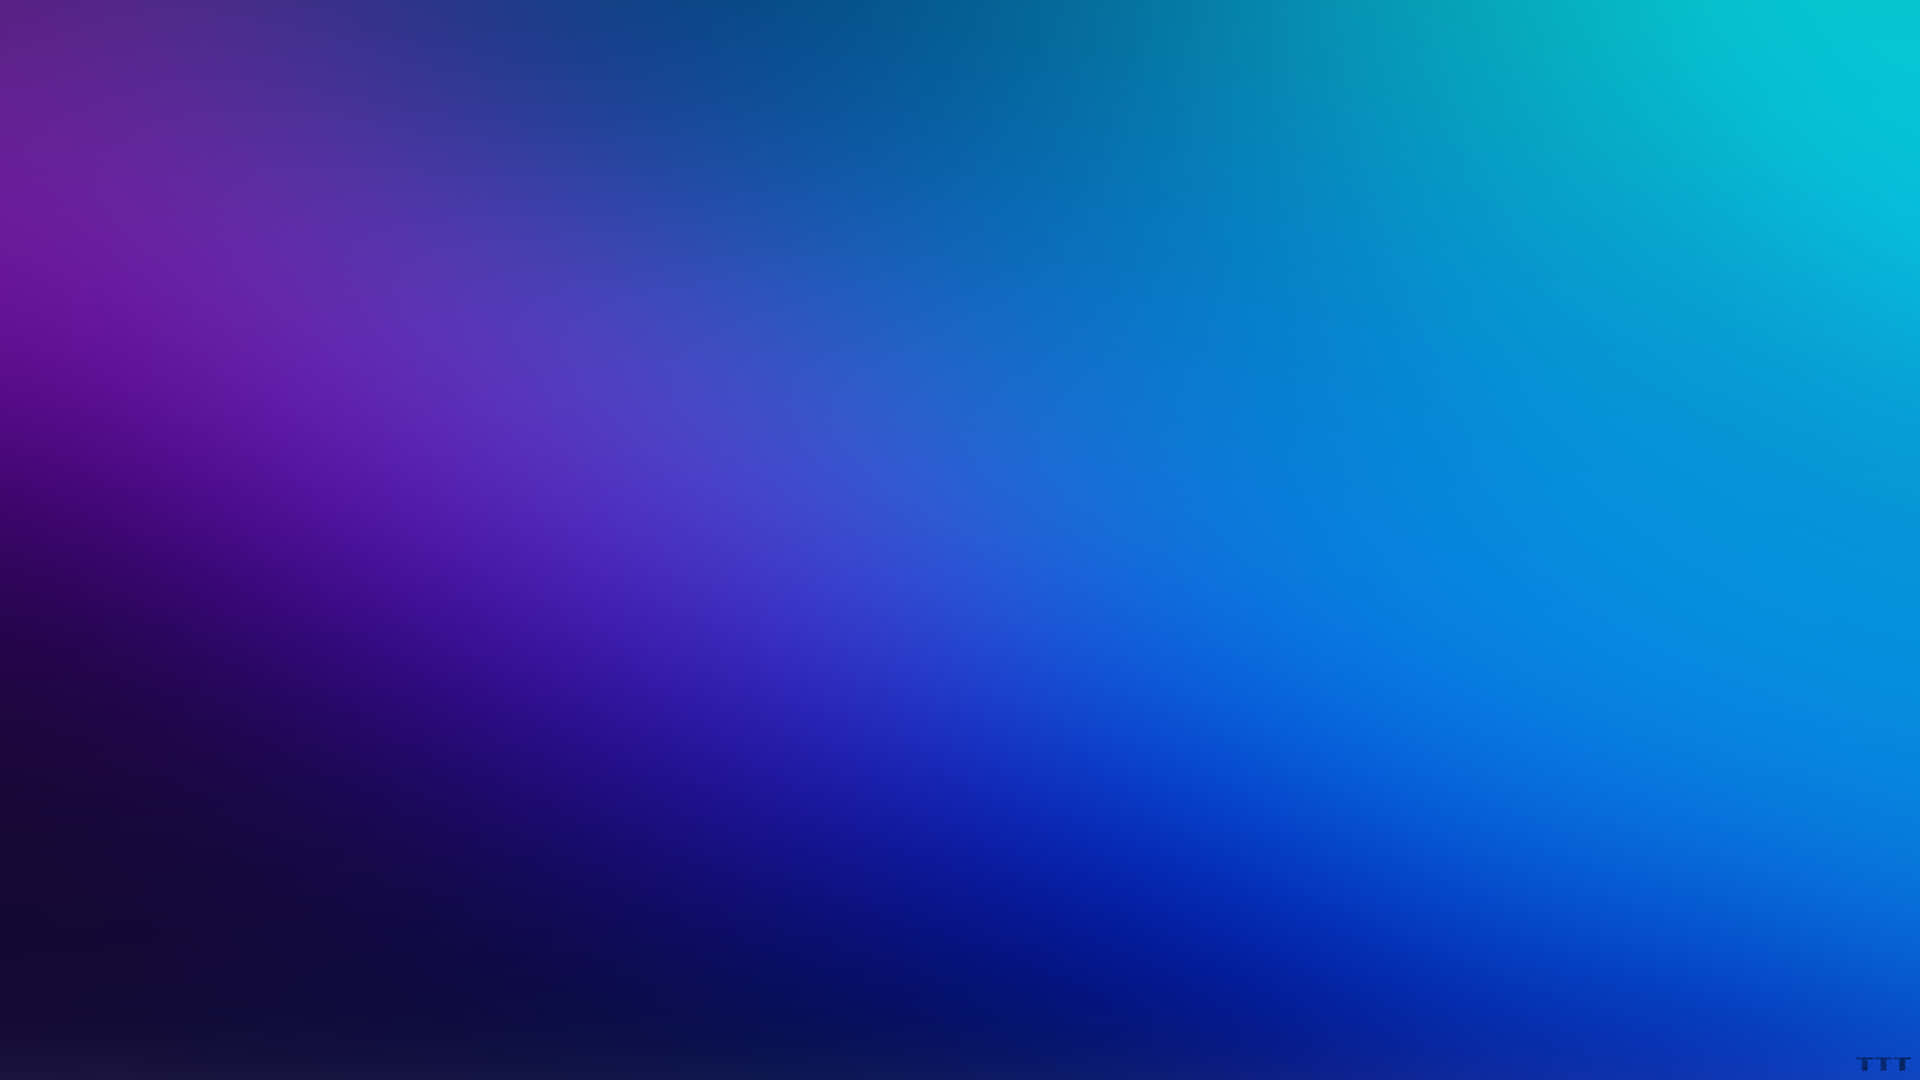 A Vibrant Purple Gradient Background